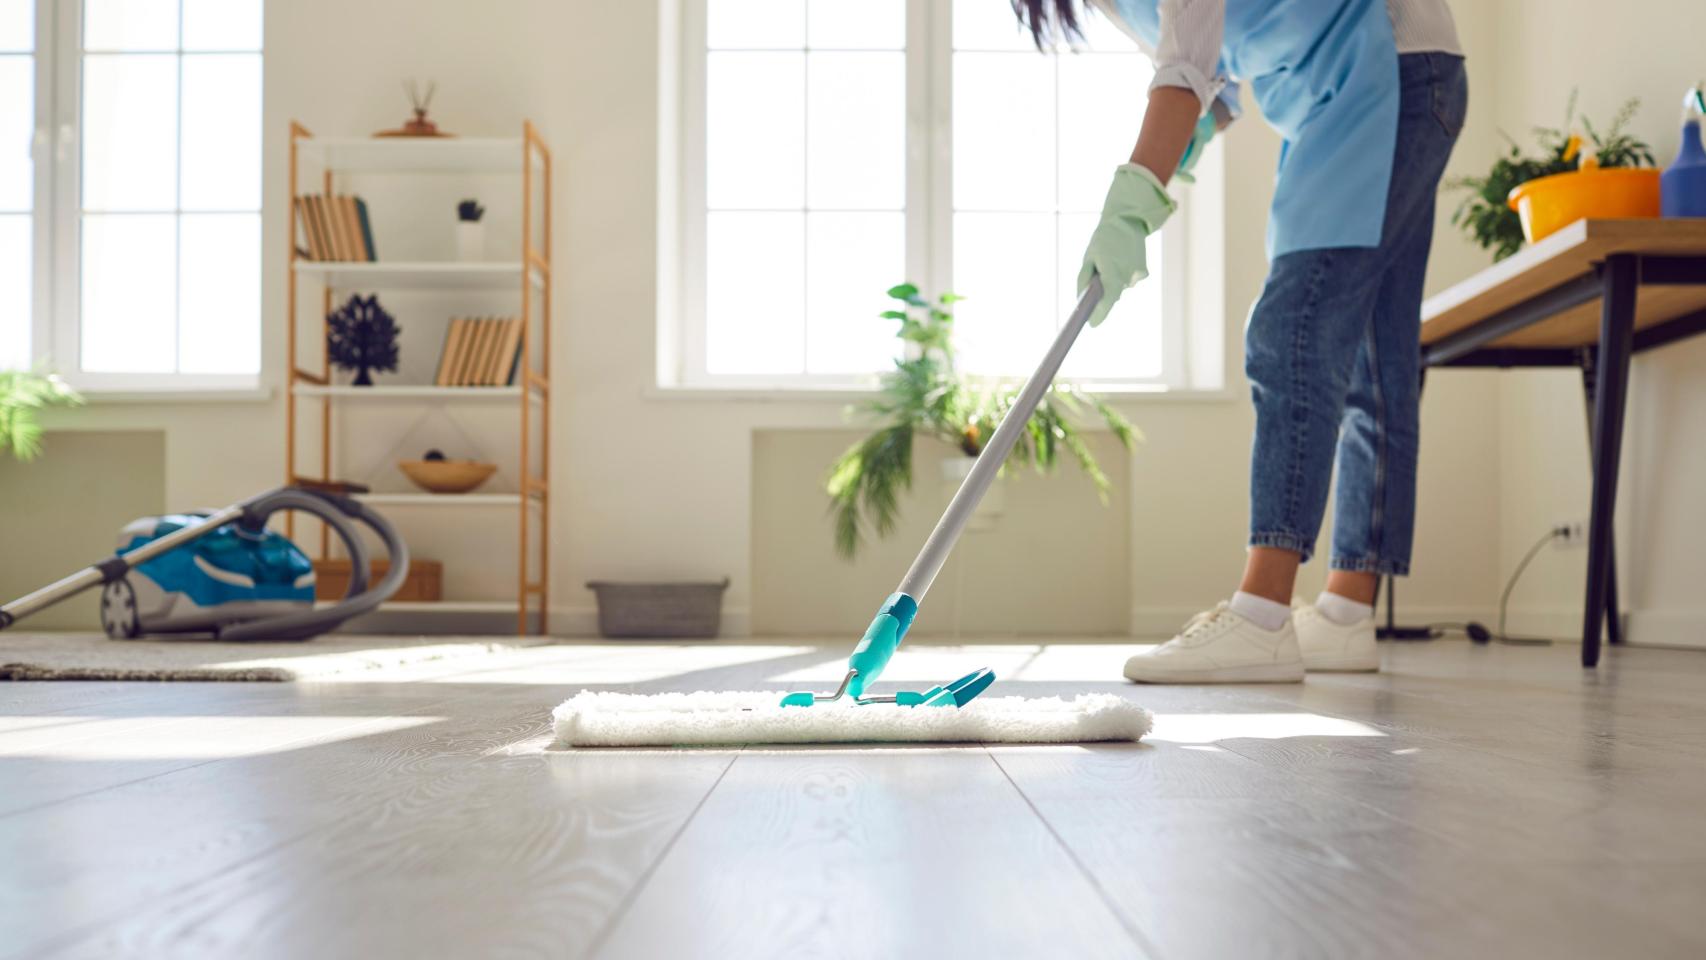 Una mujer realizando tareas de limpieza, en una imagen de Shutterstock.